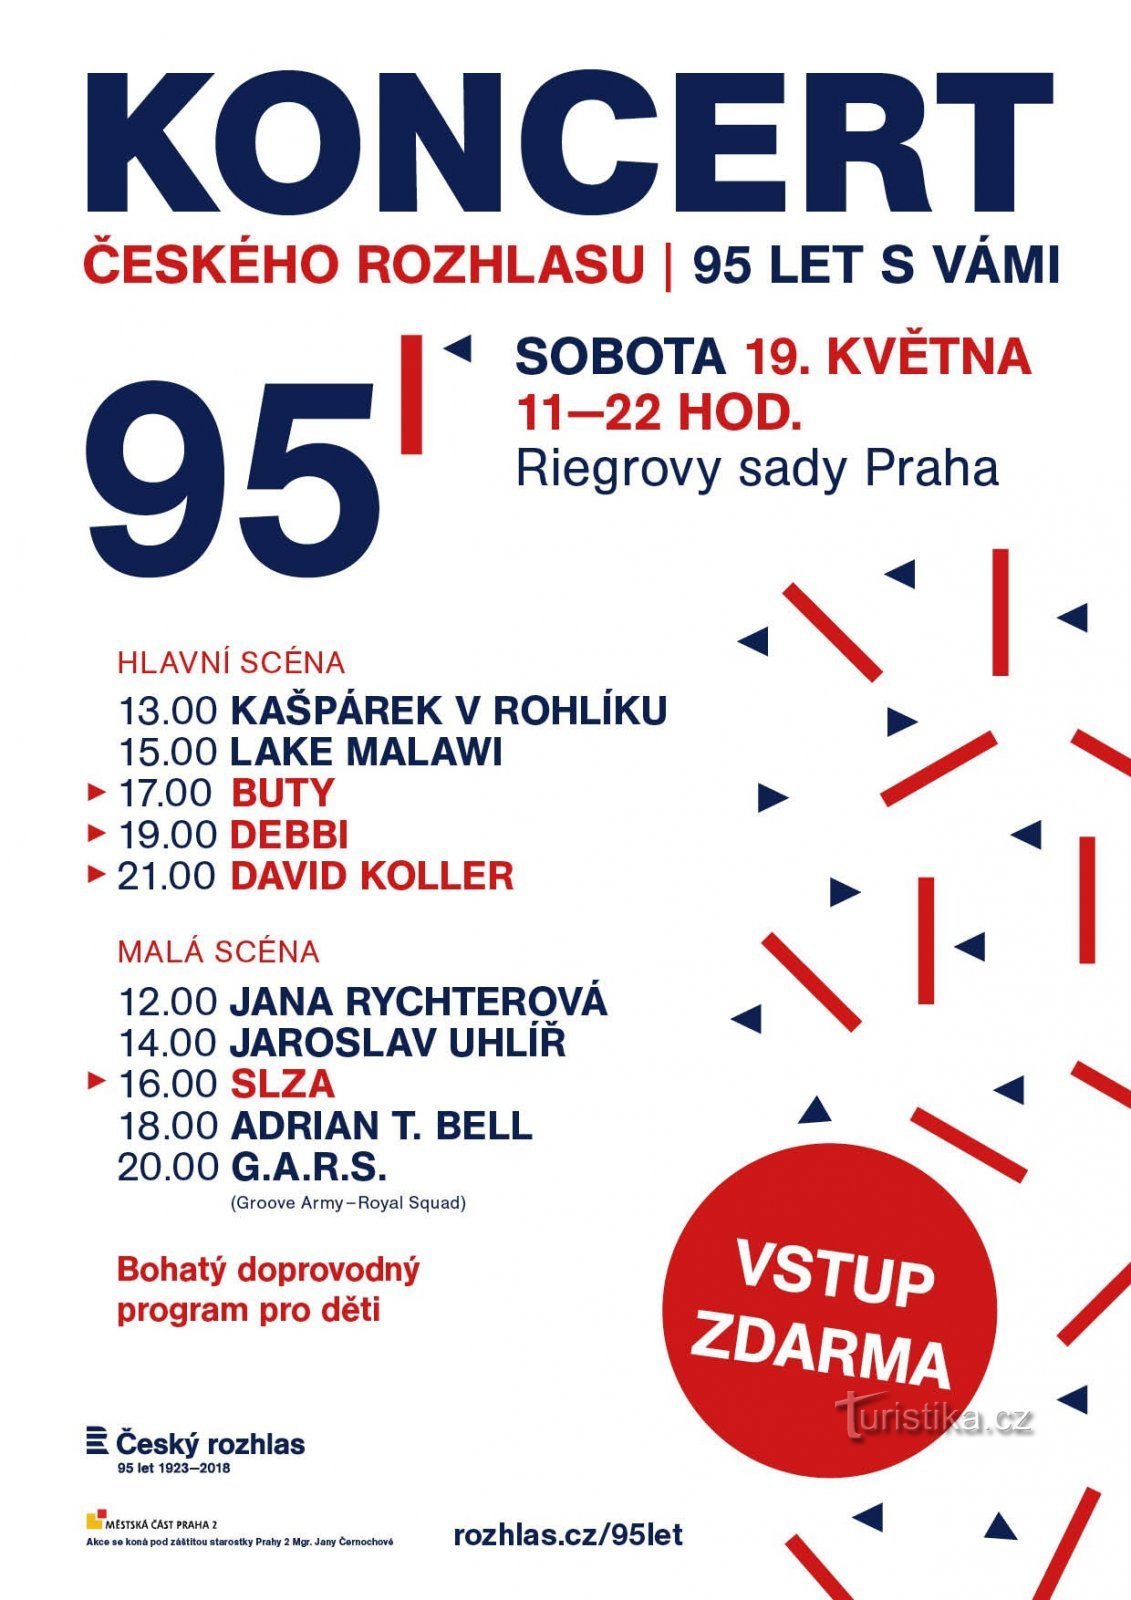 Češki radio će proslaviti 95 godina, proslava će kulminirati koncertom u Riegrový sady